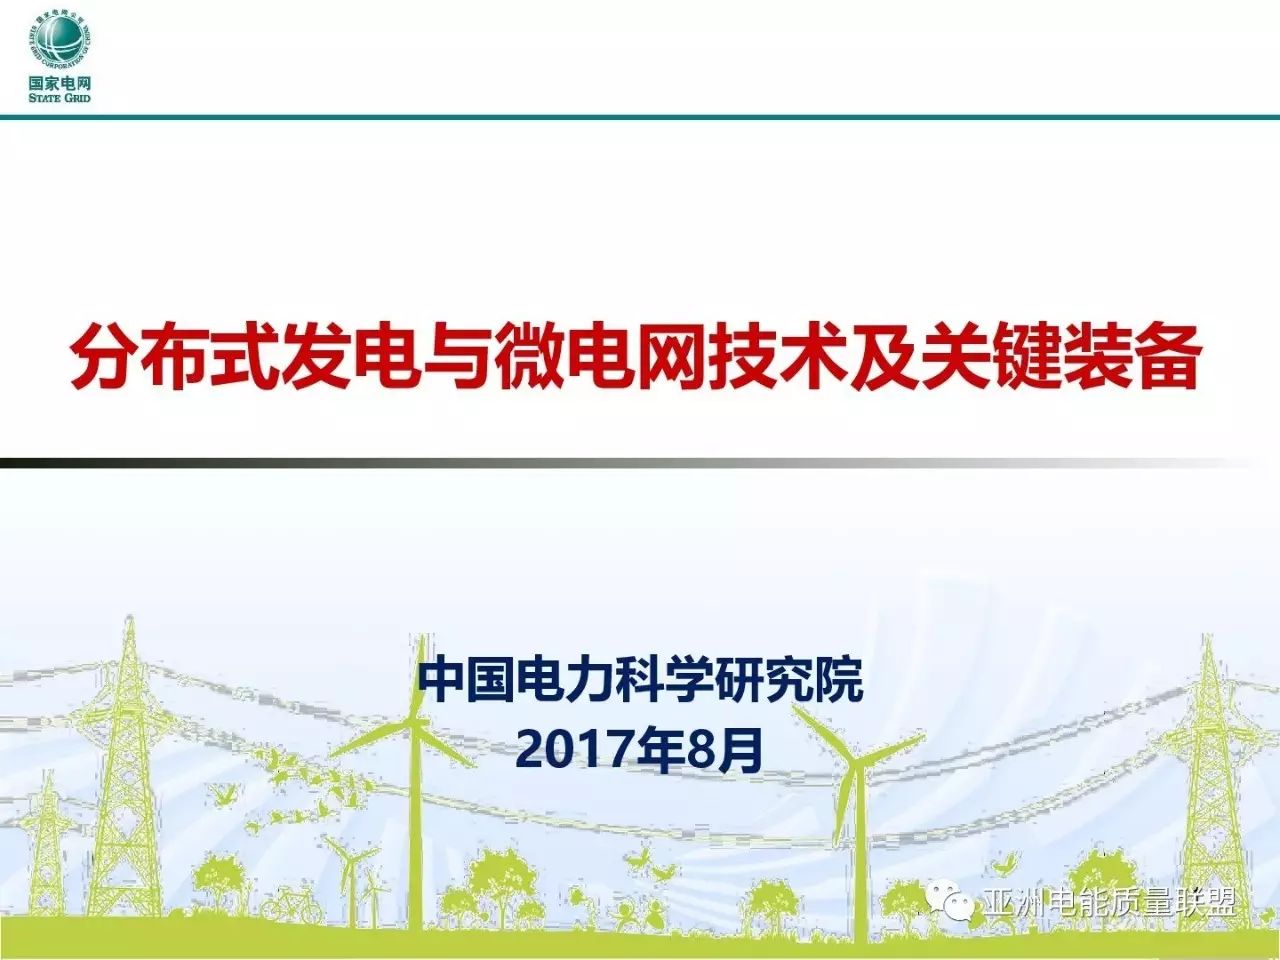 在2017年中国配电技术高峰论坛中，中国电力科学研究院的寇凌峰高工做了题为“分布式发电与微电网技术及关键装备”的精彩报告。小编征得寇高工的同意，在此与大家分享